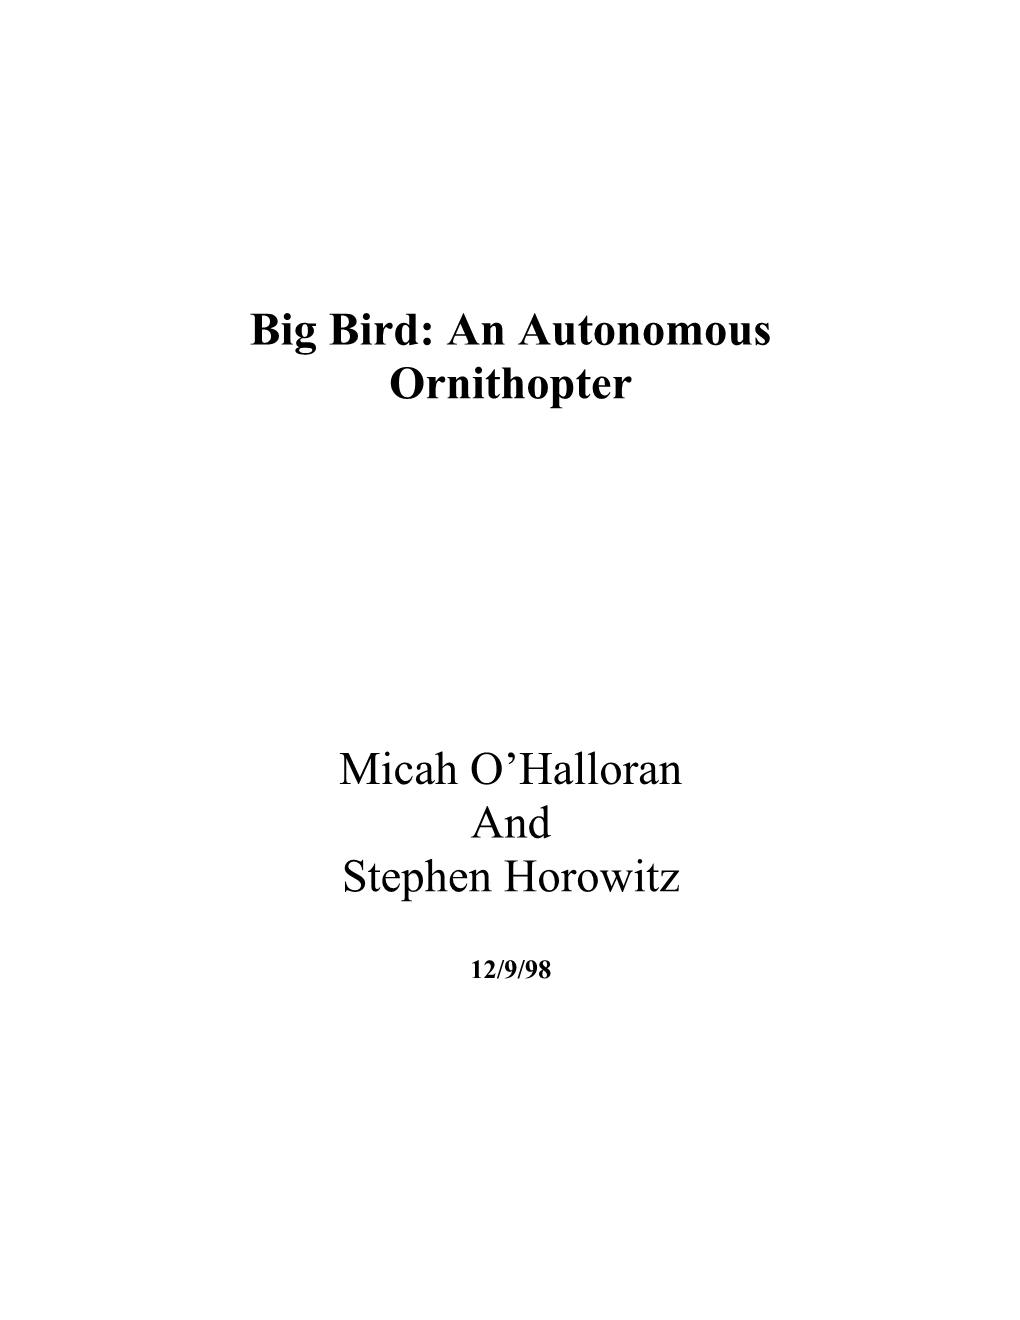 Big Bird: an Autonomous Ornithopter